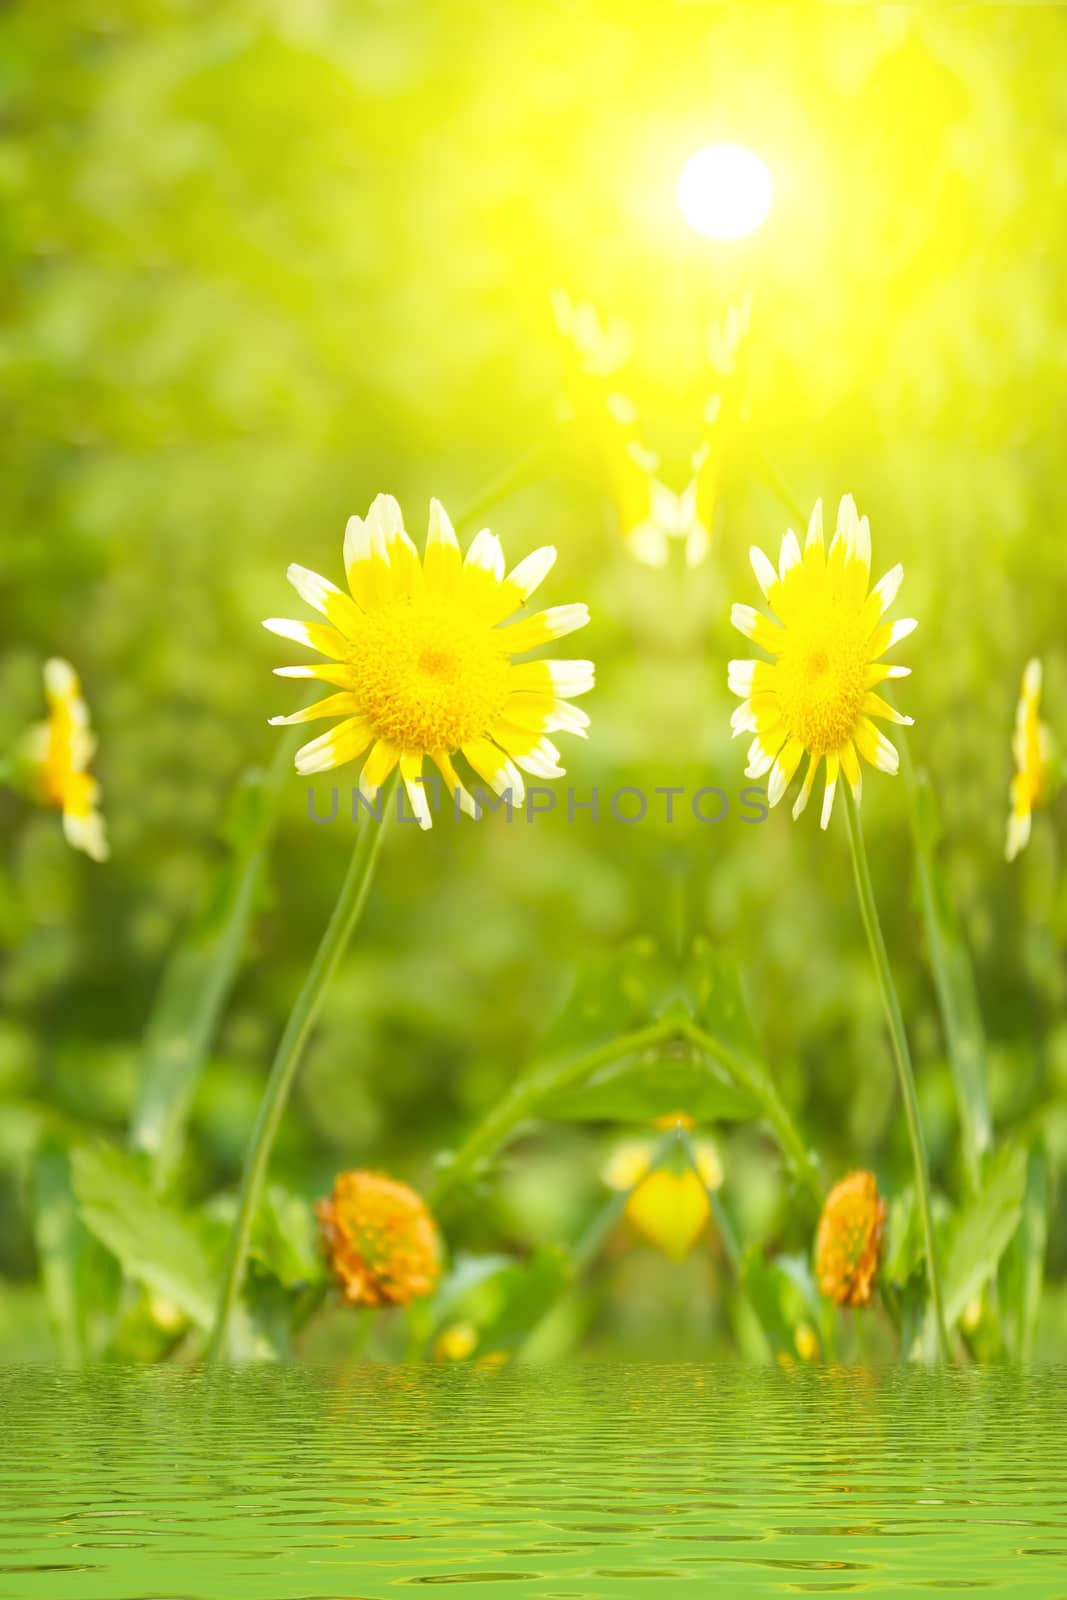 Beautiful yellow flower in field 